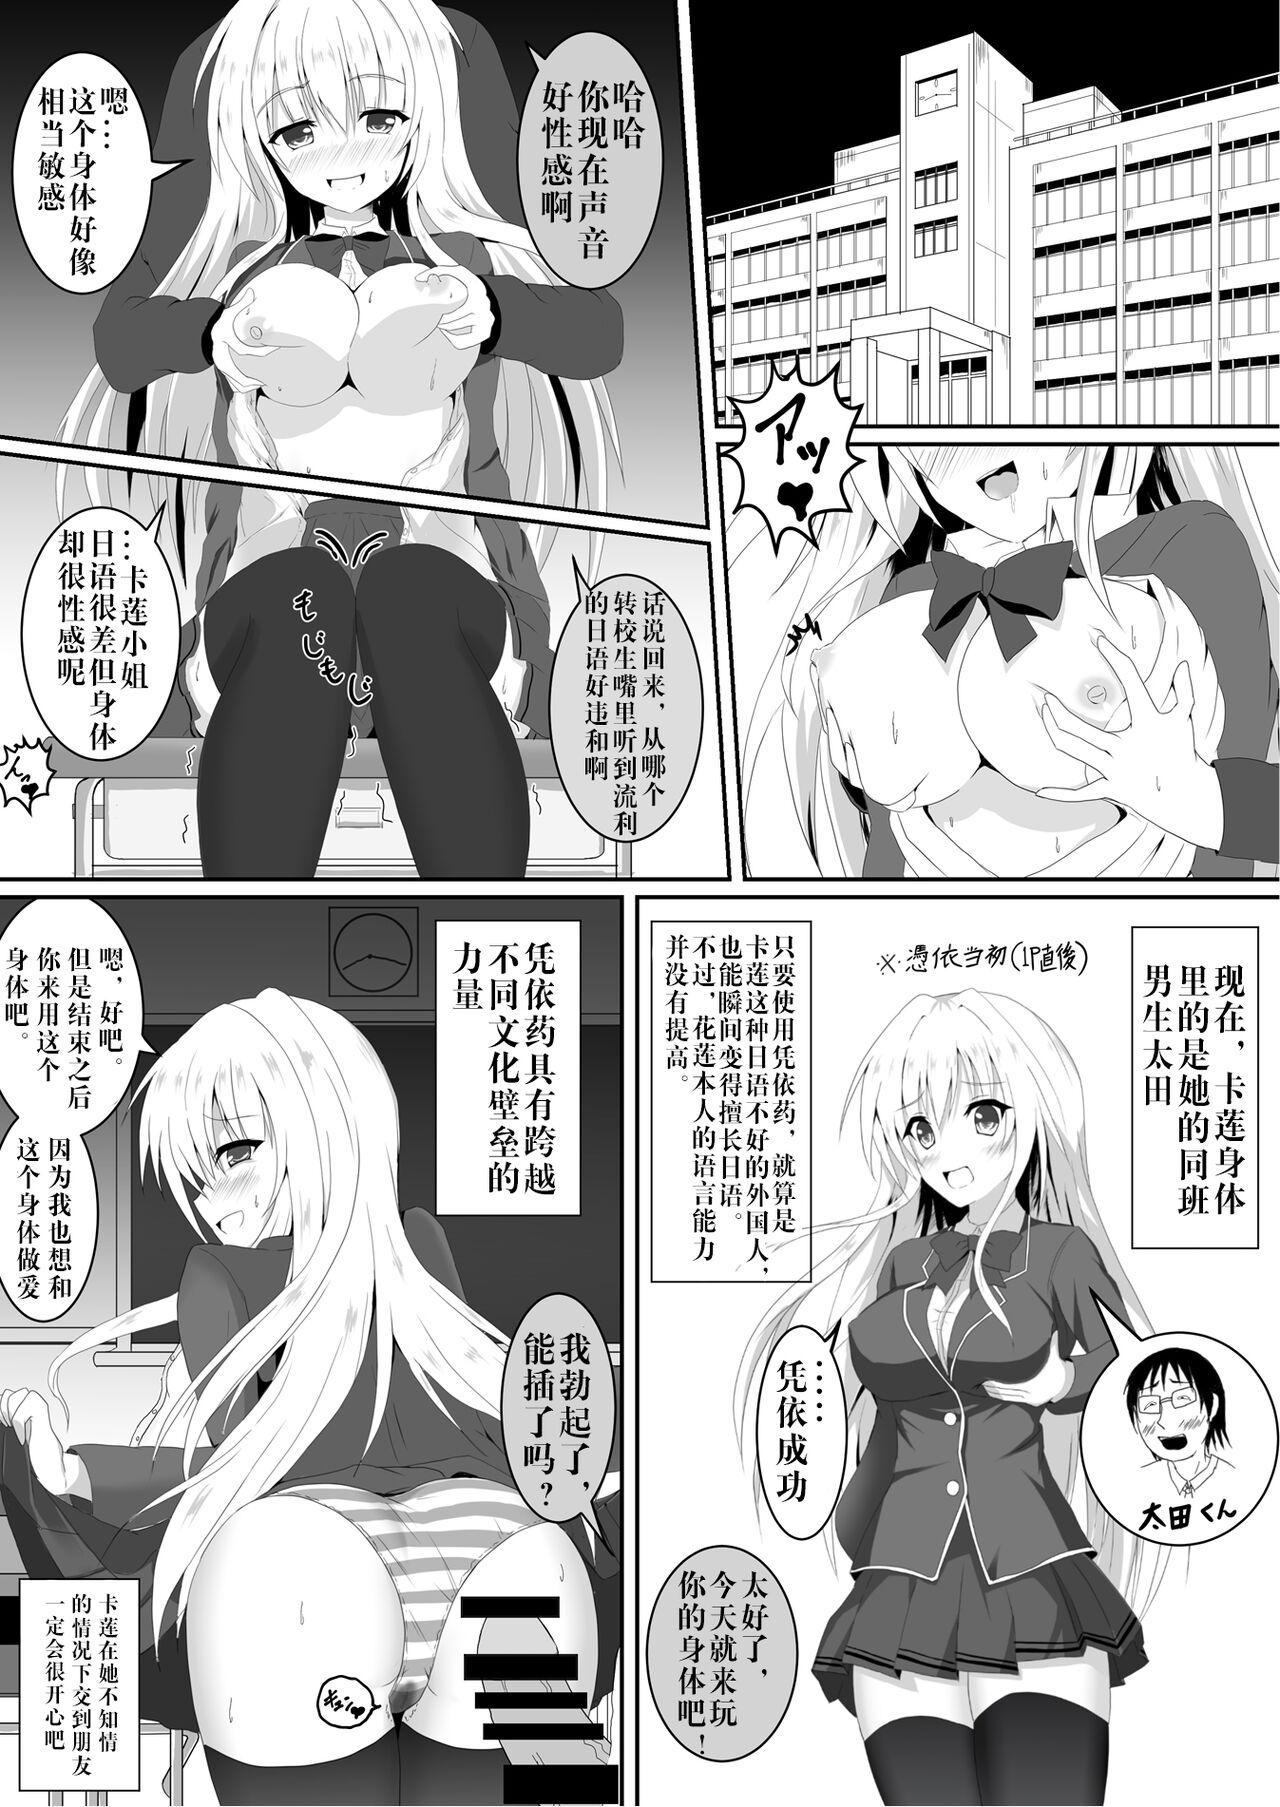 Dick Sucking Irekawari, Hyoui E Fukusuumai 3 - Azur lane Girl Girl - Page 2